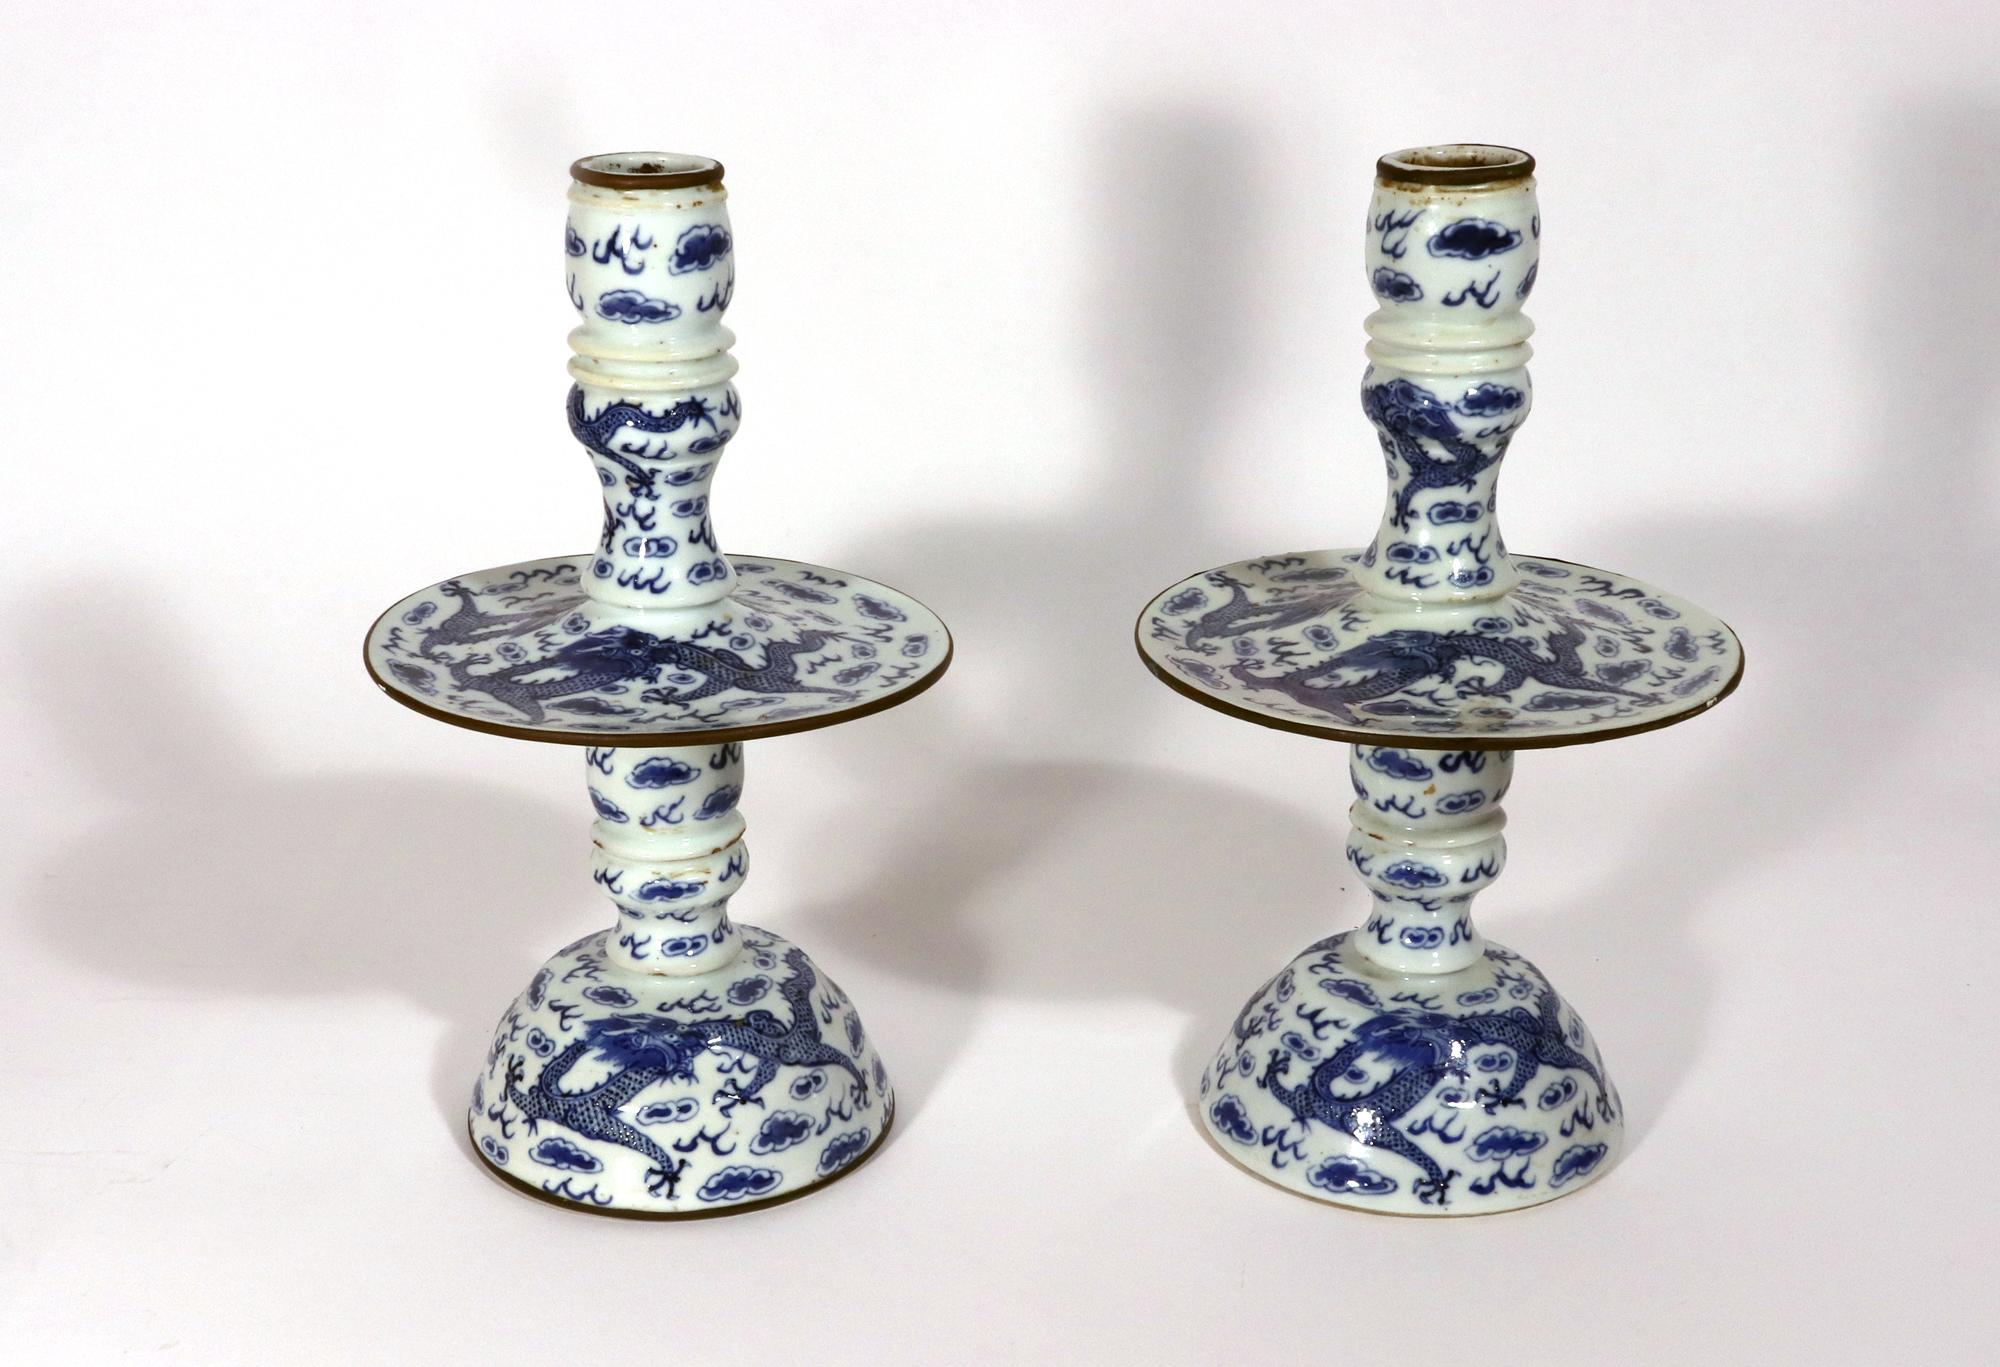 Chinese Export Porcelain Underglaze Blue Pair of Candlesticks,
CIRCA 1850-80

Das Paar der chinesischen Export unterglasurblauen Porzellan Leuchter haben eine runde gewölbte blütenförmige Basis mit der Spalte mit einem zentralen breiten Tropfschale.